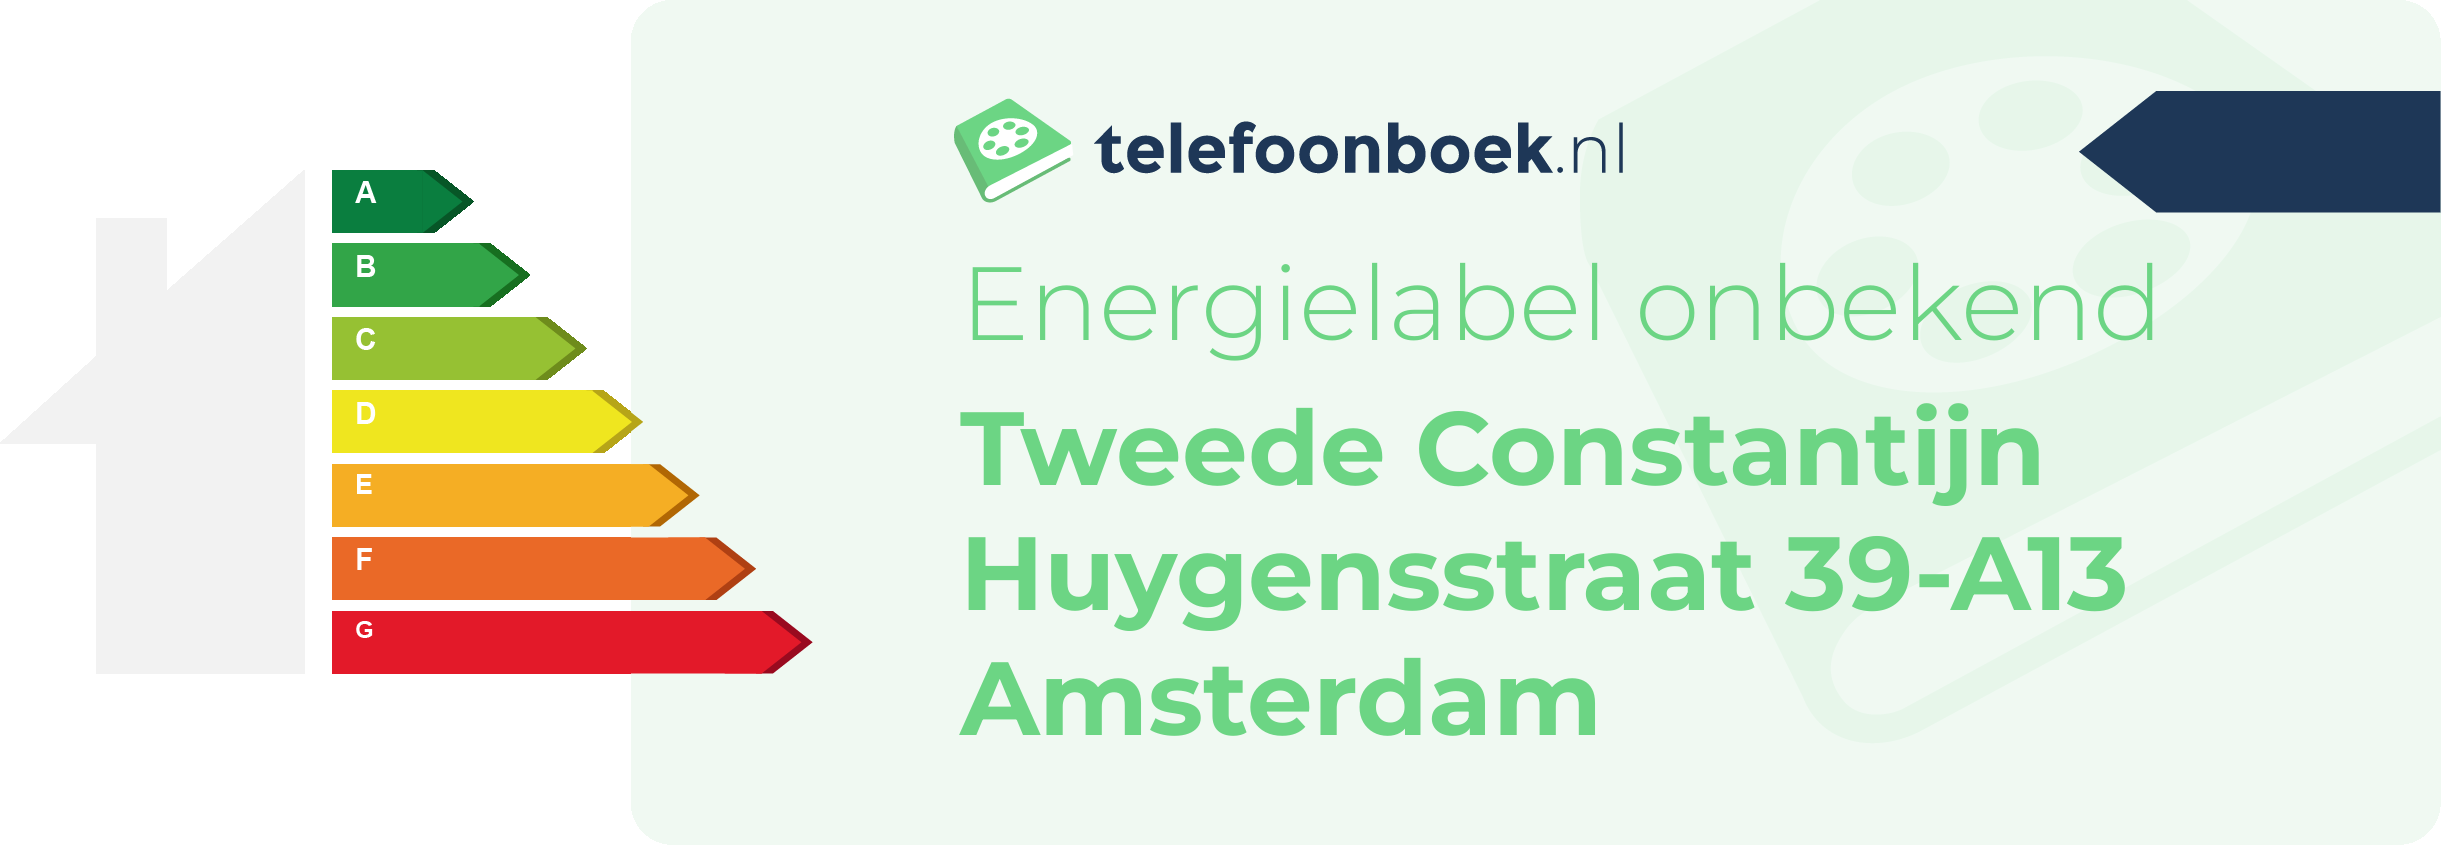 Energielabel Tweede Constantijn Huygensstraat 39-A13 Amsterdam